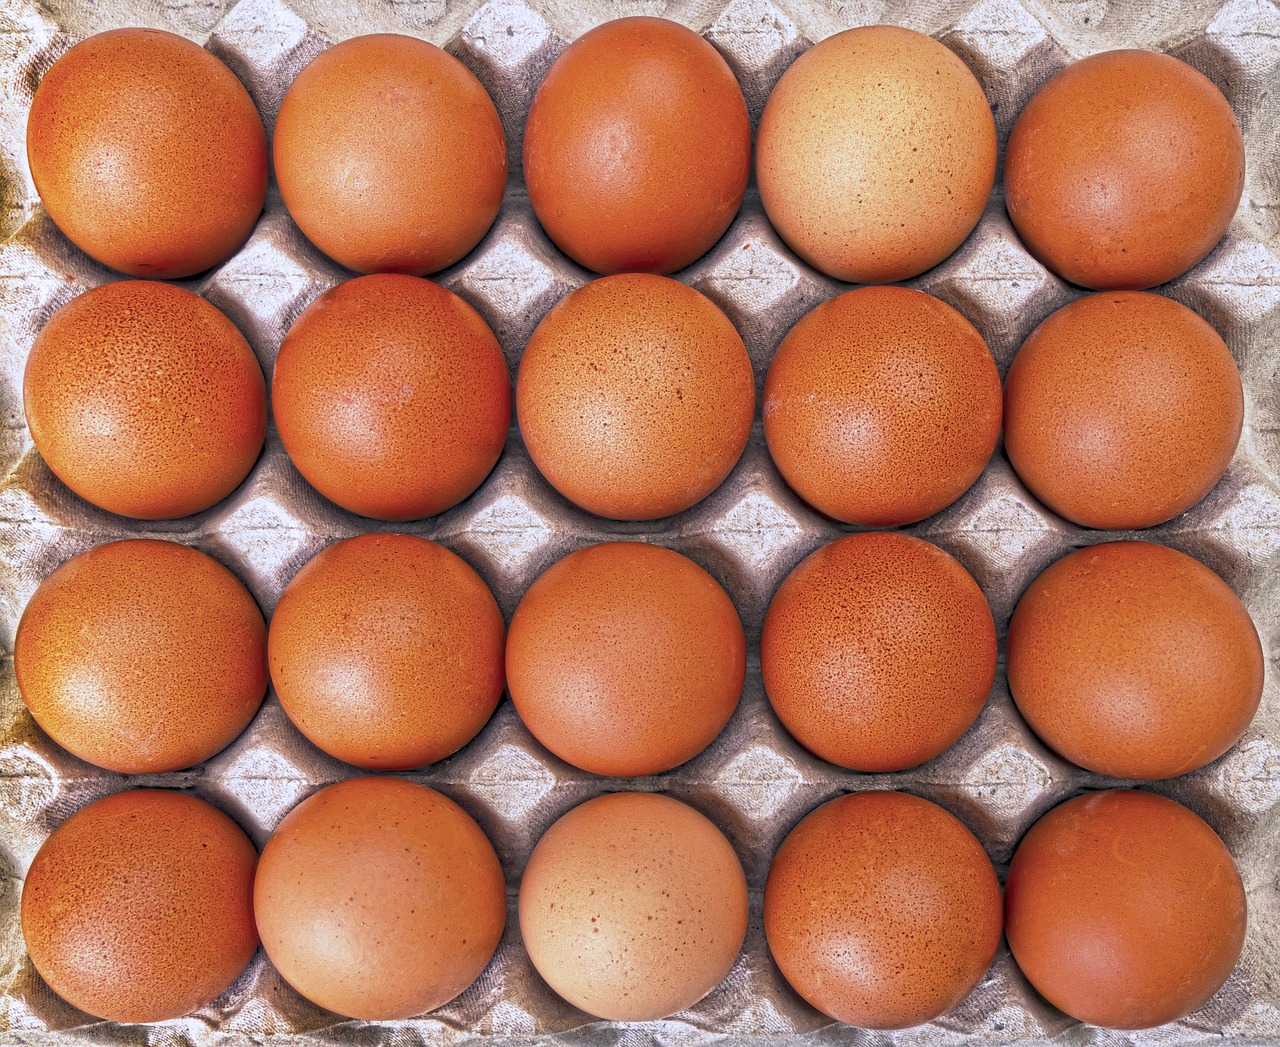 Kiaušinis, Kiaušiniai, Daug Kiaušinių, Laisvas, Geflügelhof, Savarankiška Prekyba, Turgus, Savarankiškai Prekybininkai, Hofladen, Vištienos Kiaušiniai